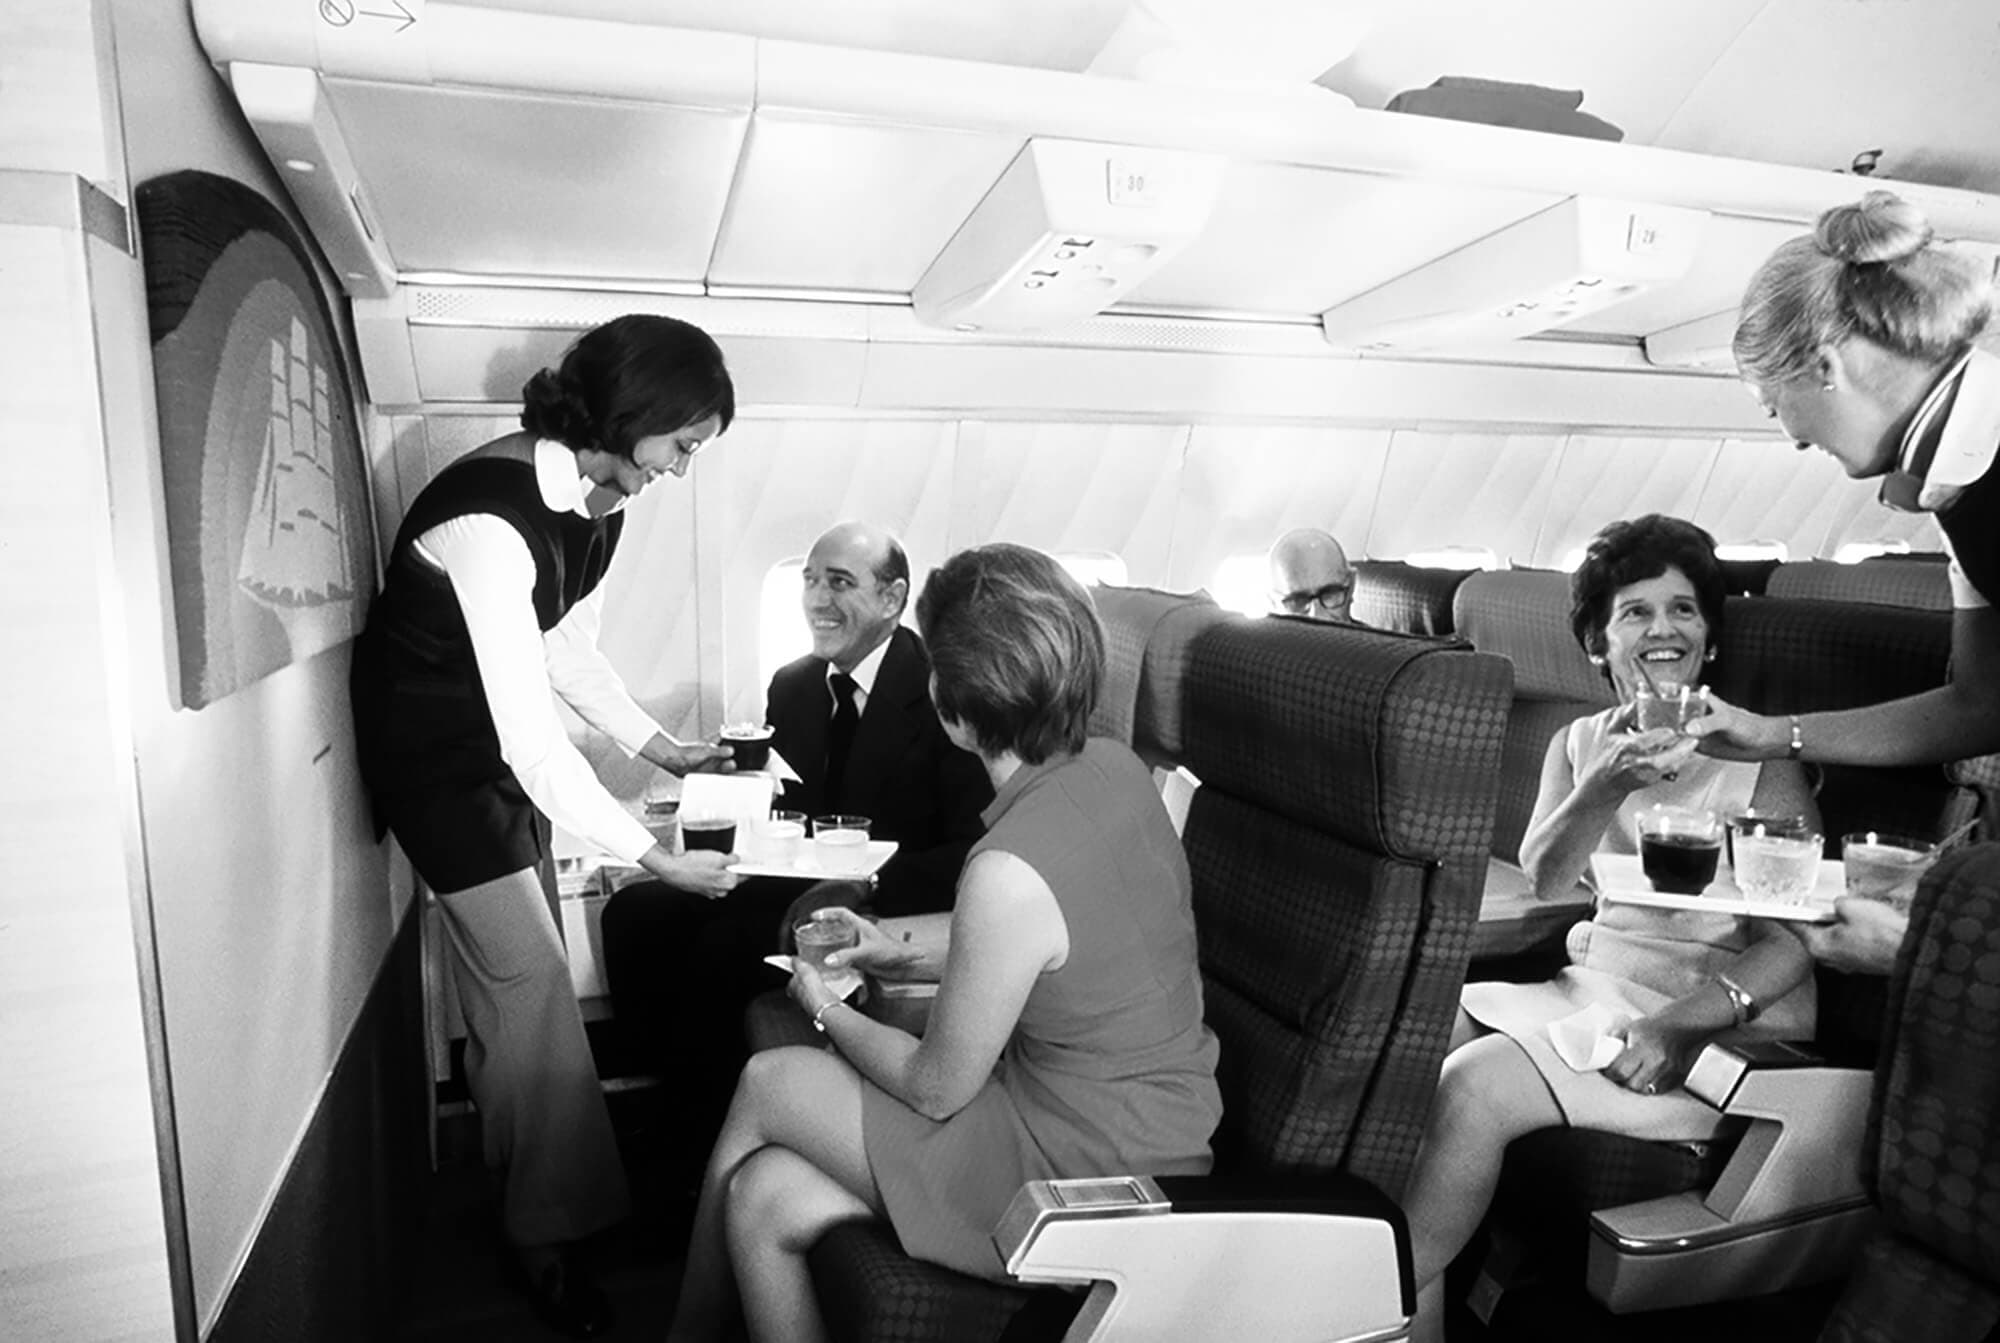 Passengers joyfully receiving meal service on a Pan Am flight